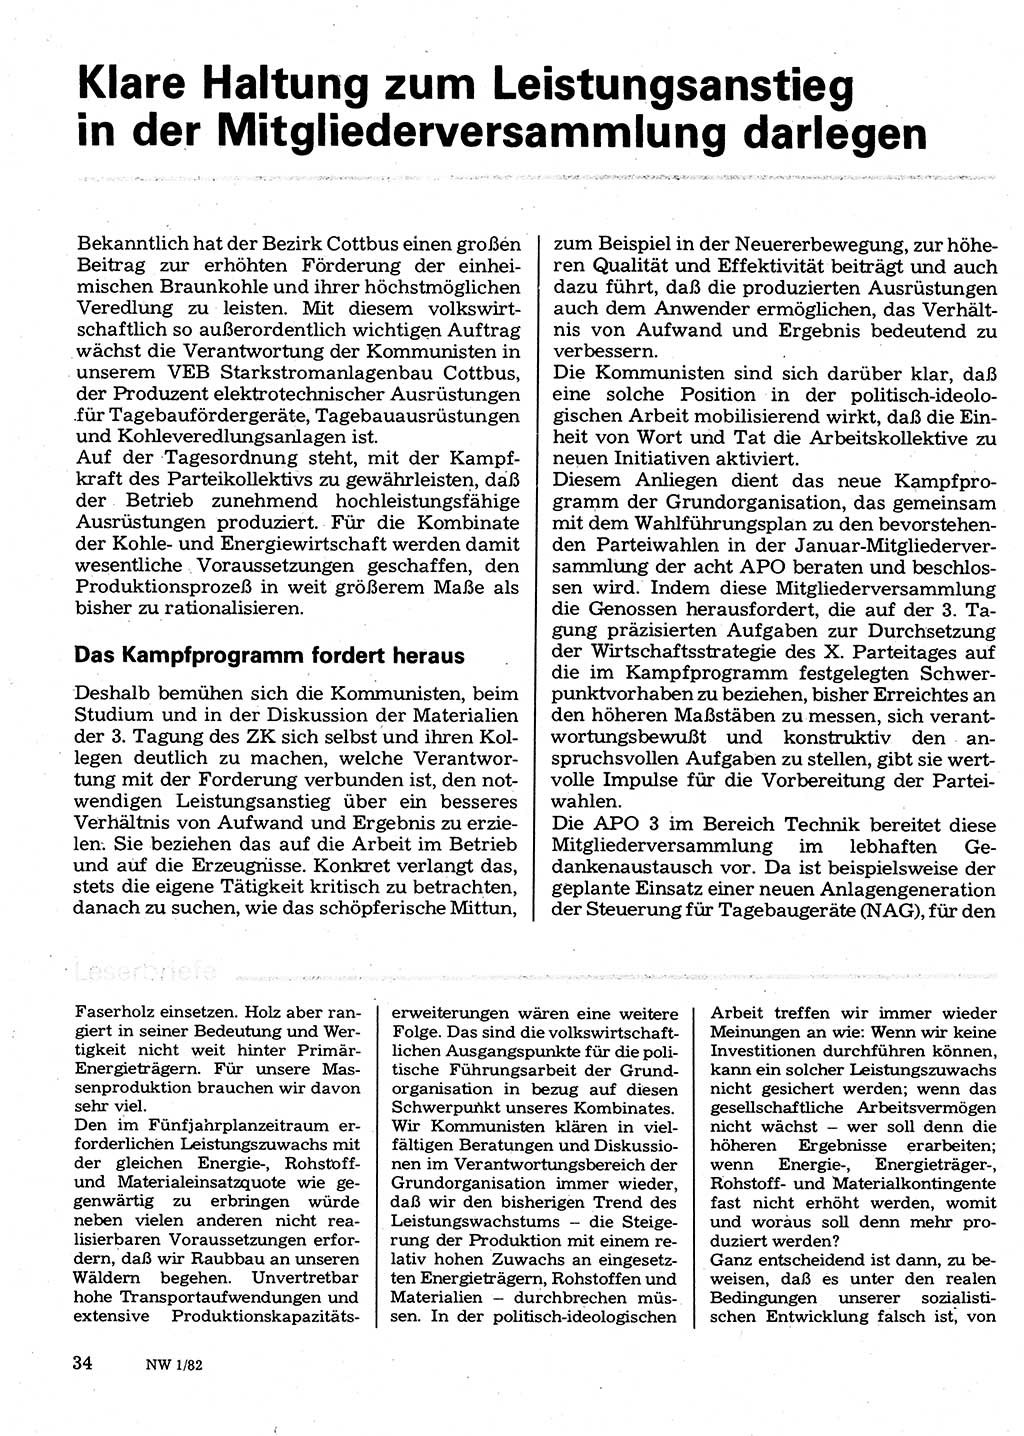 Neuer Weg (NW), Organ des Zentralkomitees (ZK) der SED (Sozialistische Einheitspartei Deutschlands) für Fragen des Parteilebens, 37. Jahrgang [Deutsche Demokratische Republik (DDR)] 1982, Seite 34 (NW ZK SED DDR 1982, S. 34)